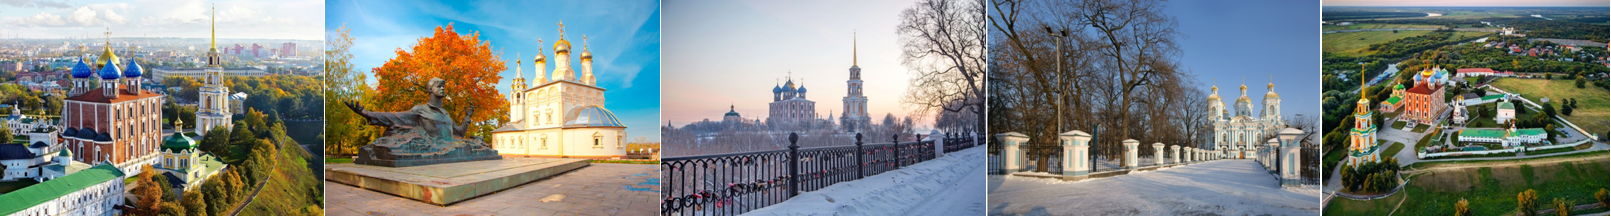 Рождественское путешествие в Новогоднюю столицу России - Рязань 2020 